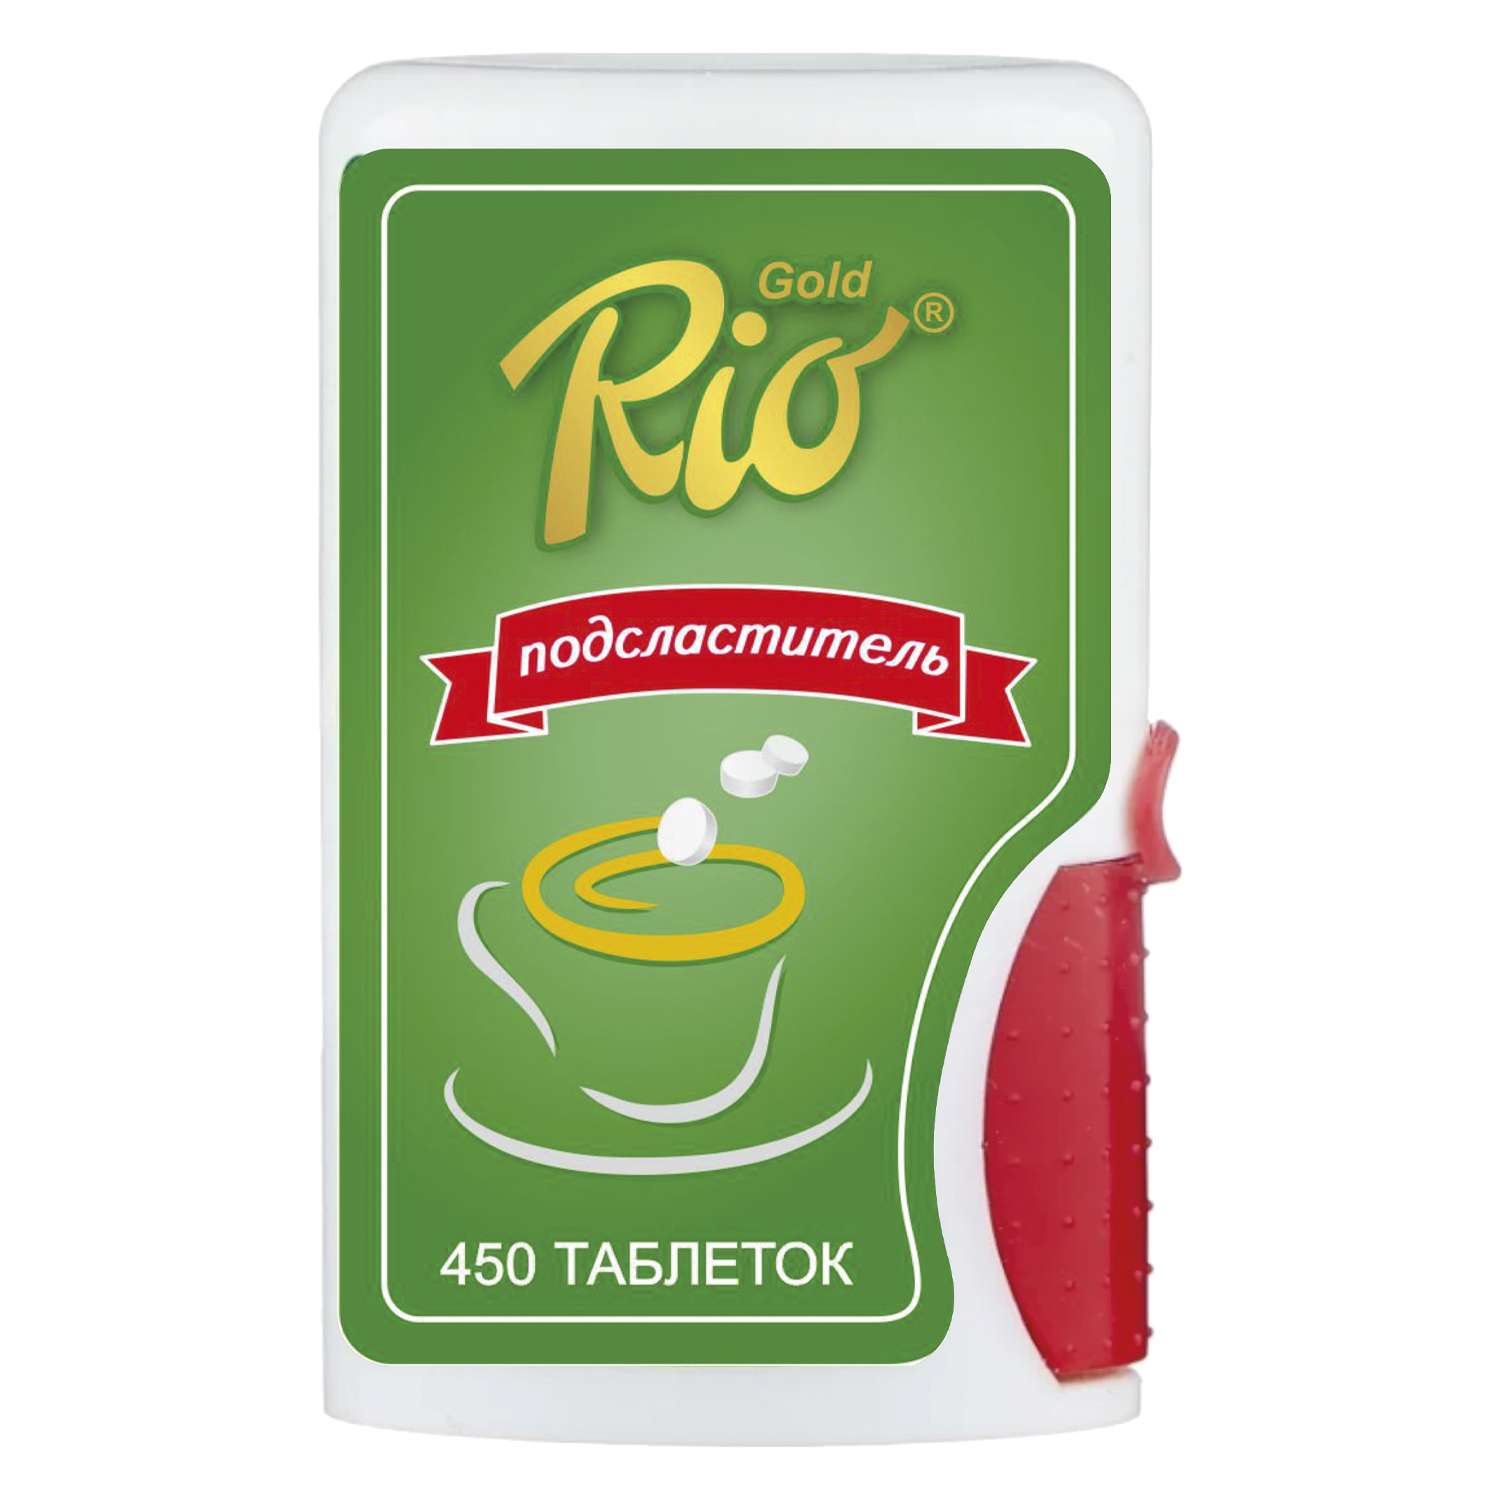 Подсластитель Rio Gold Gold в таблетках 450шт - фото 1